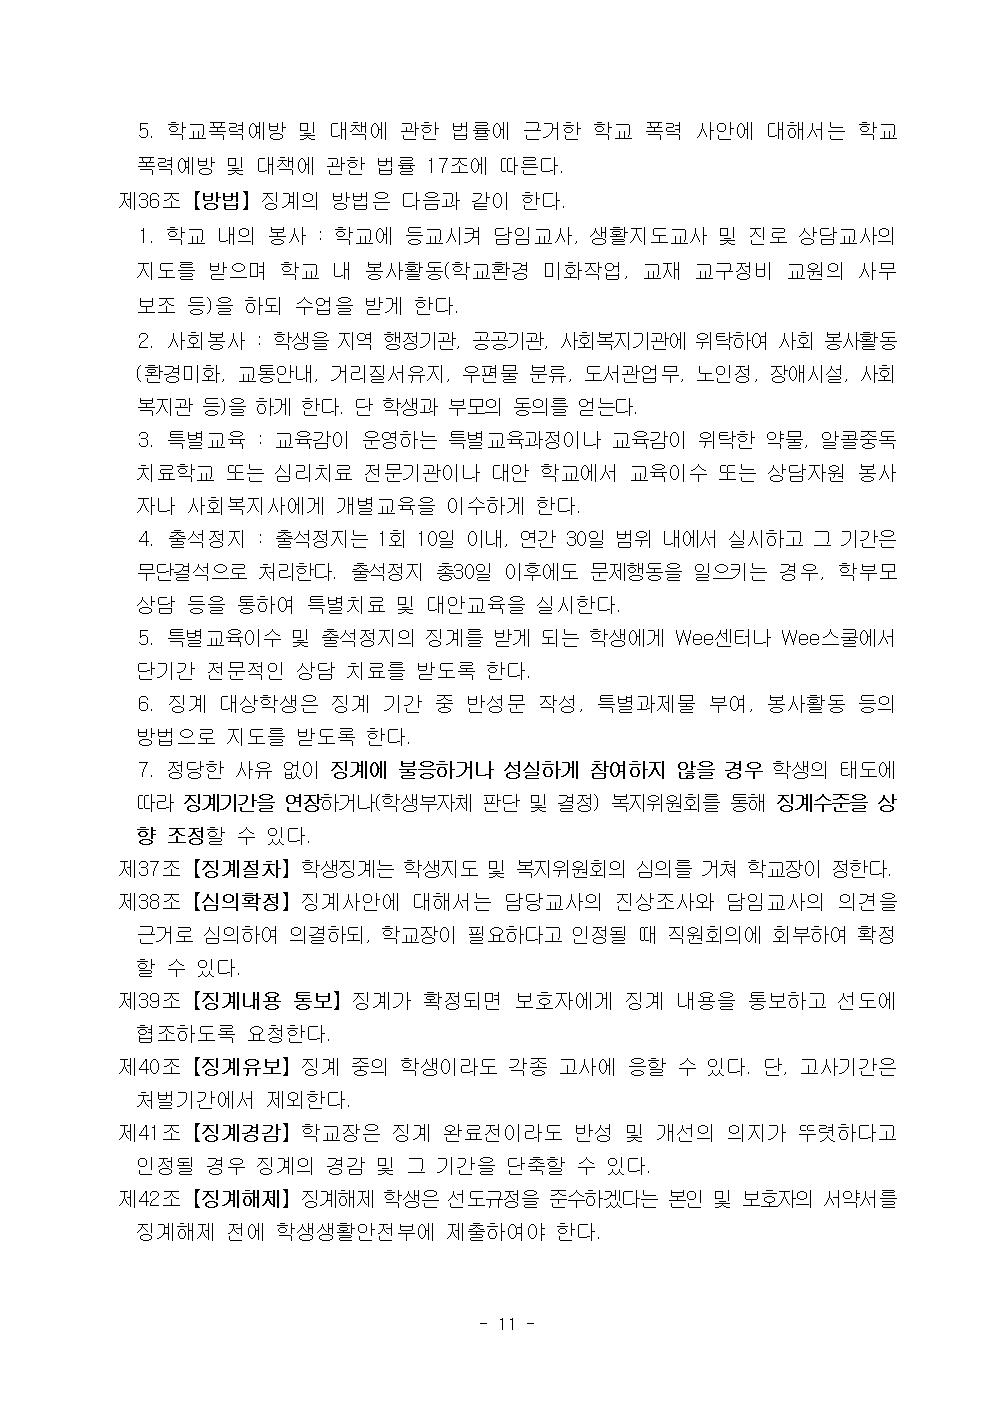 2022학년도 광혜원중학교 학생생활규정012